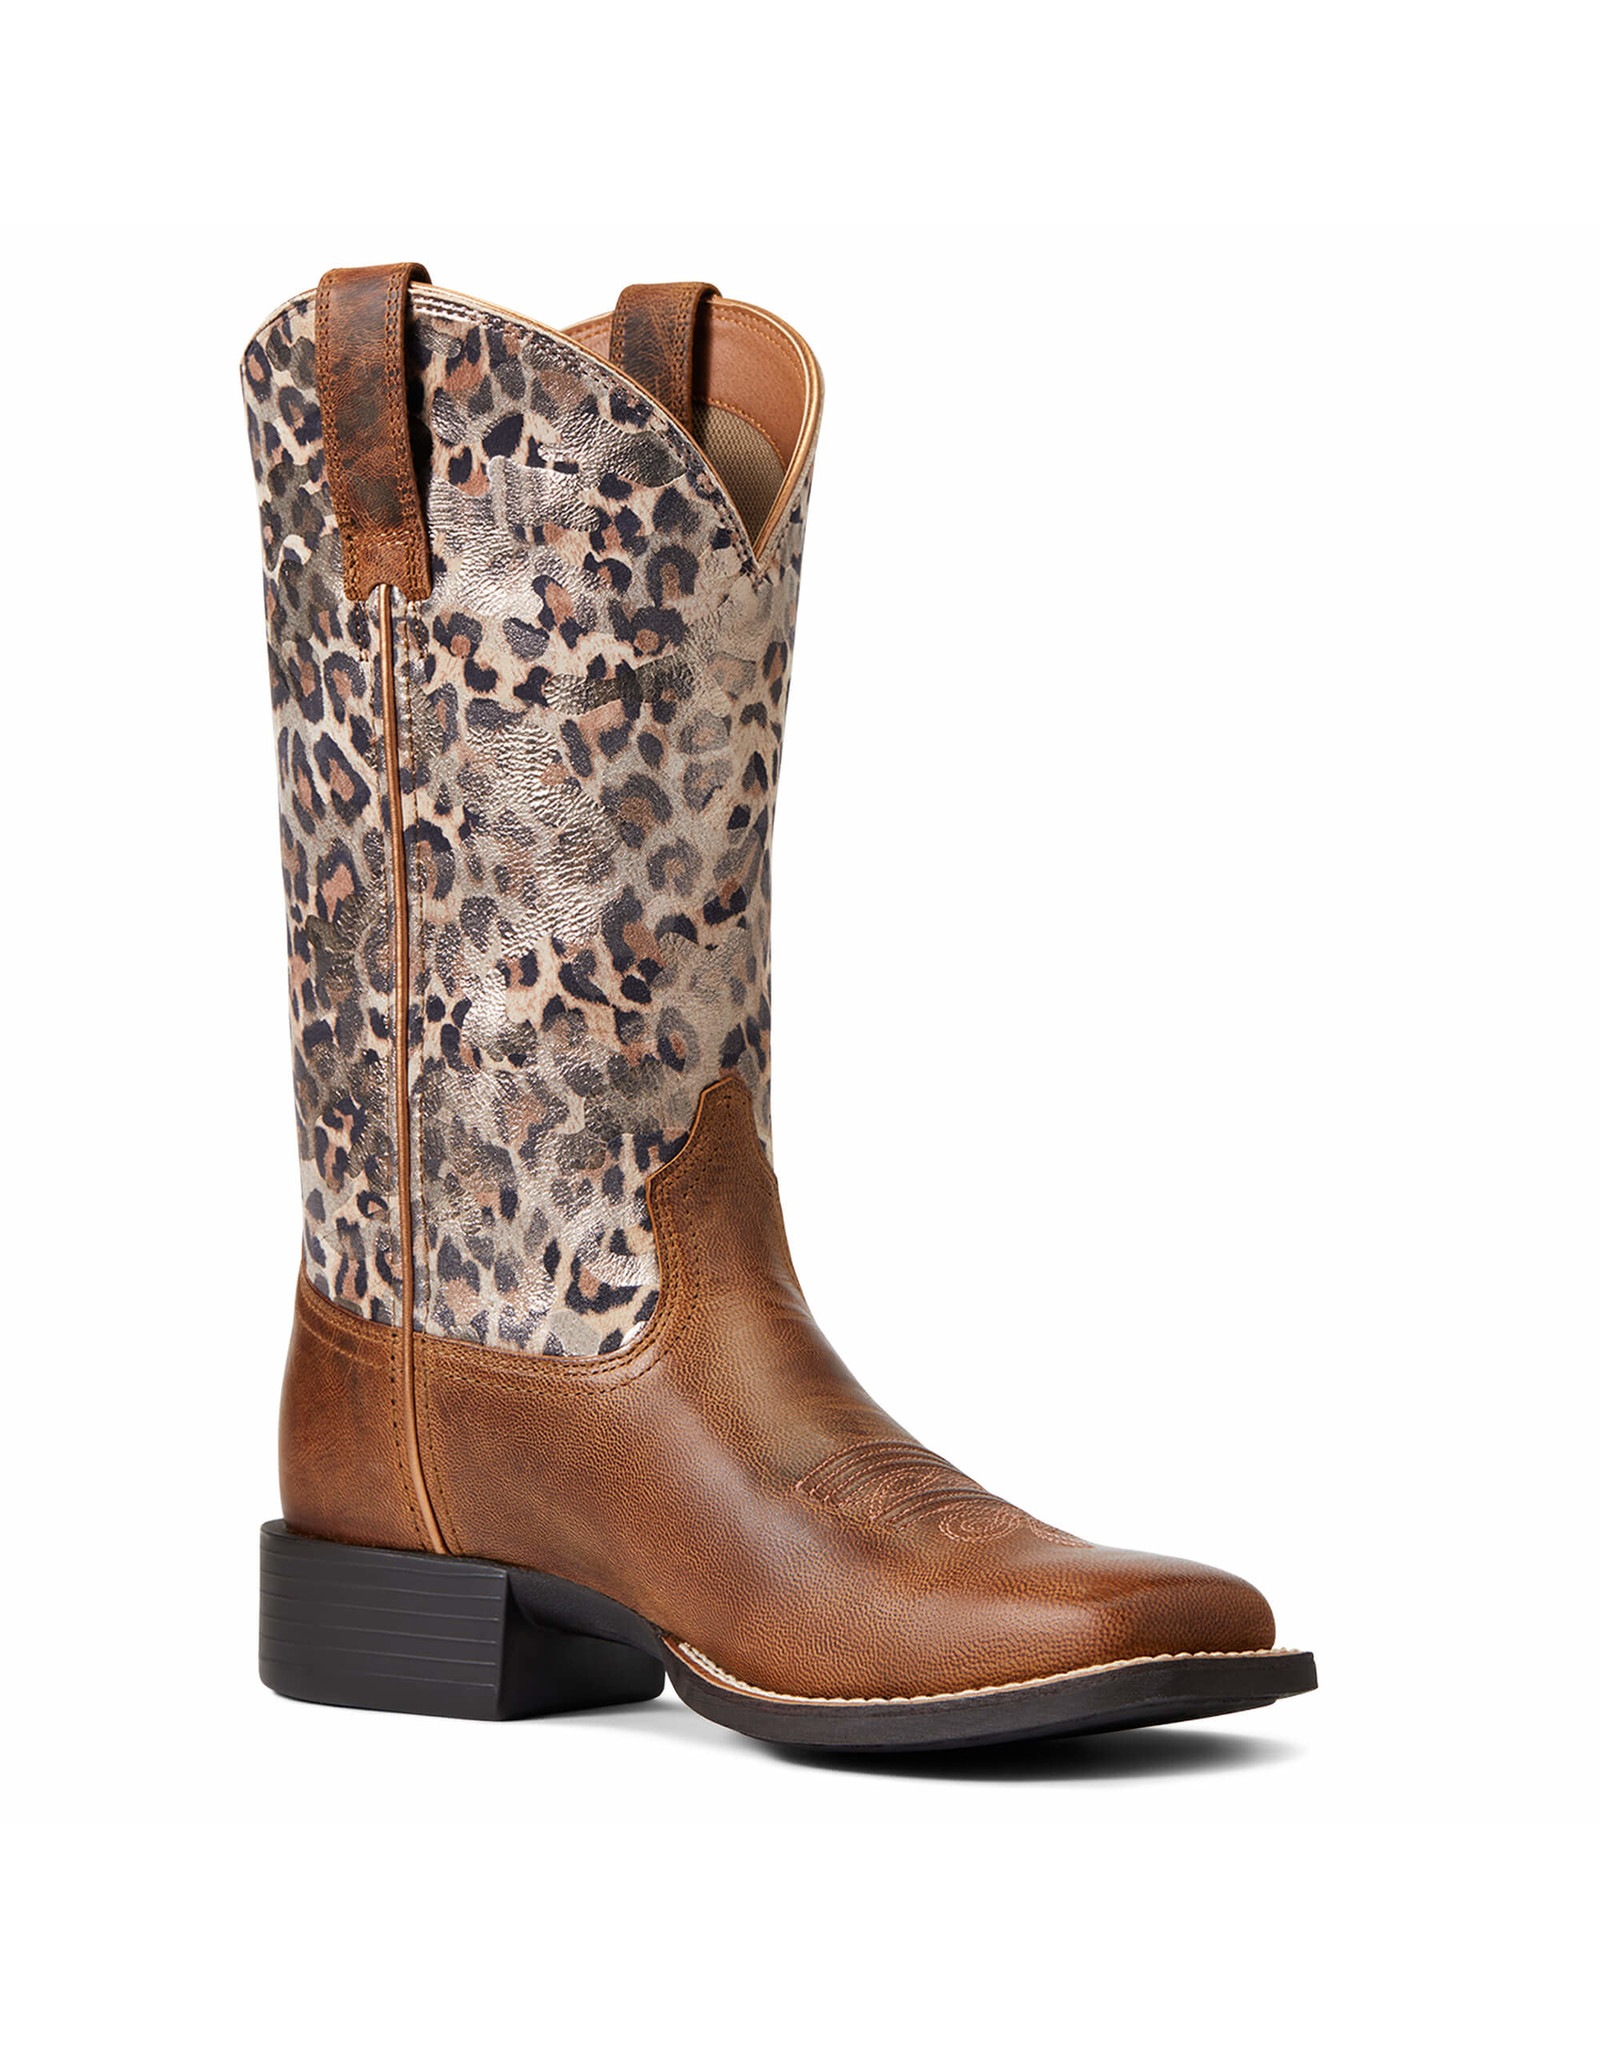 Ariat Ladies Round Up Metallic Cheetah 10040363 Western Boots